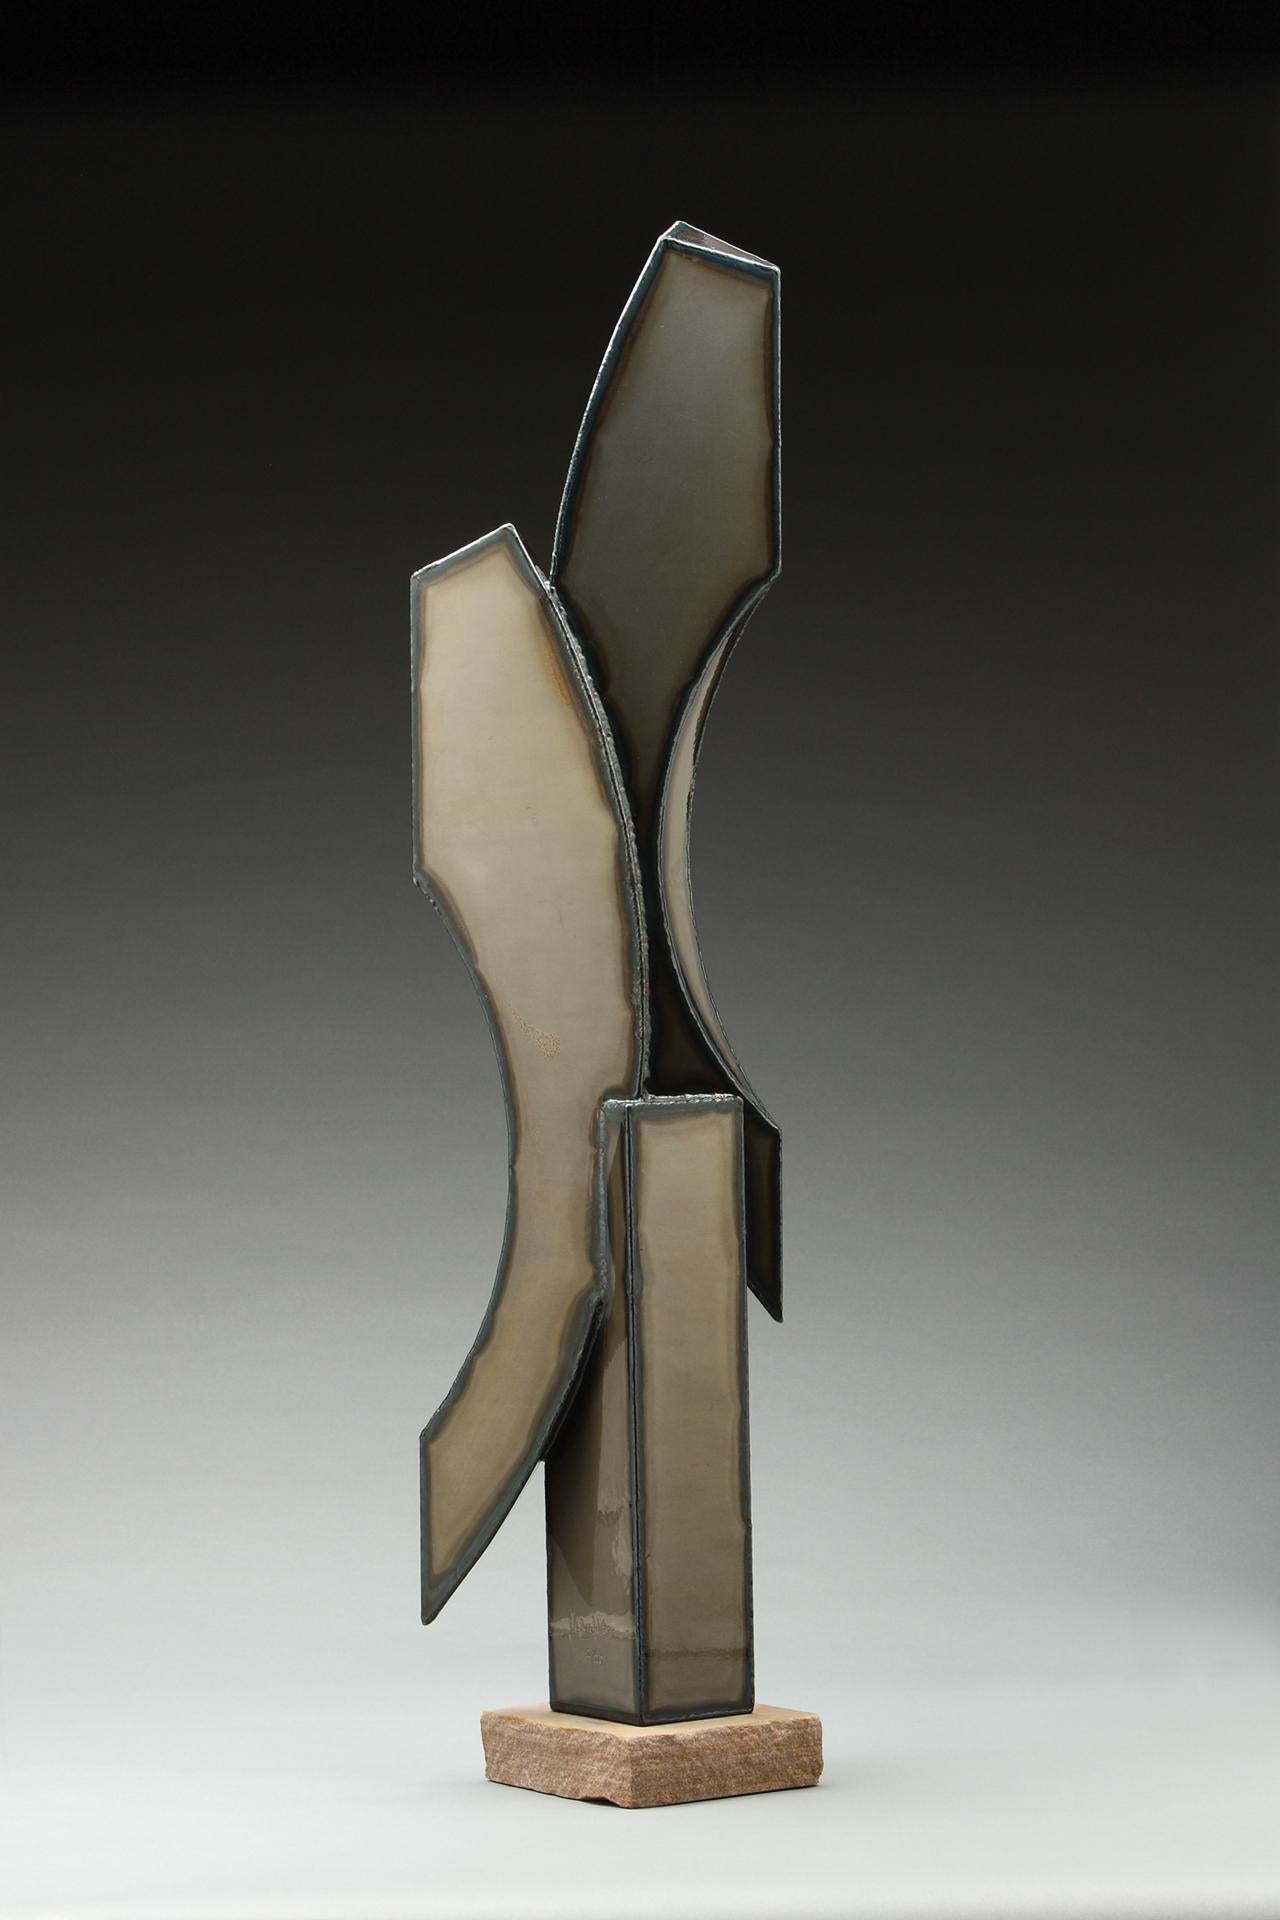 Duet, 30"high powder-coated steel sculpture